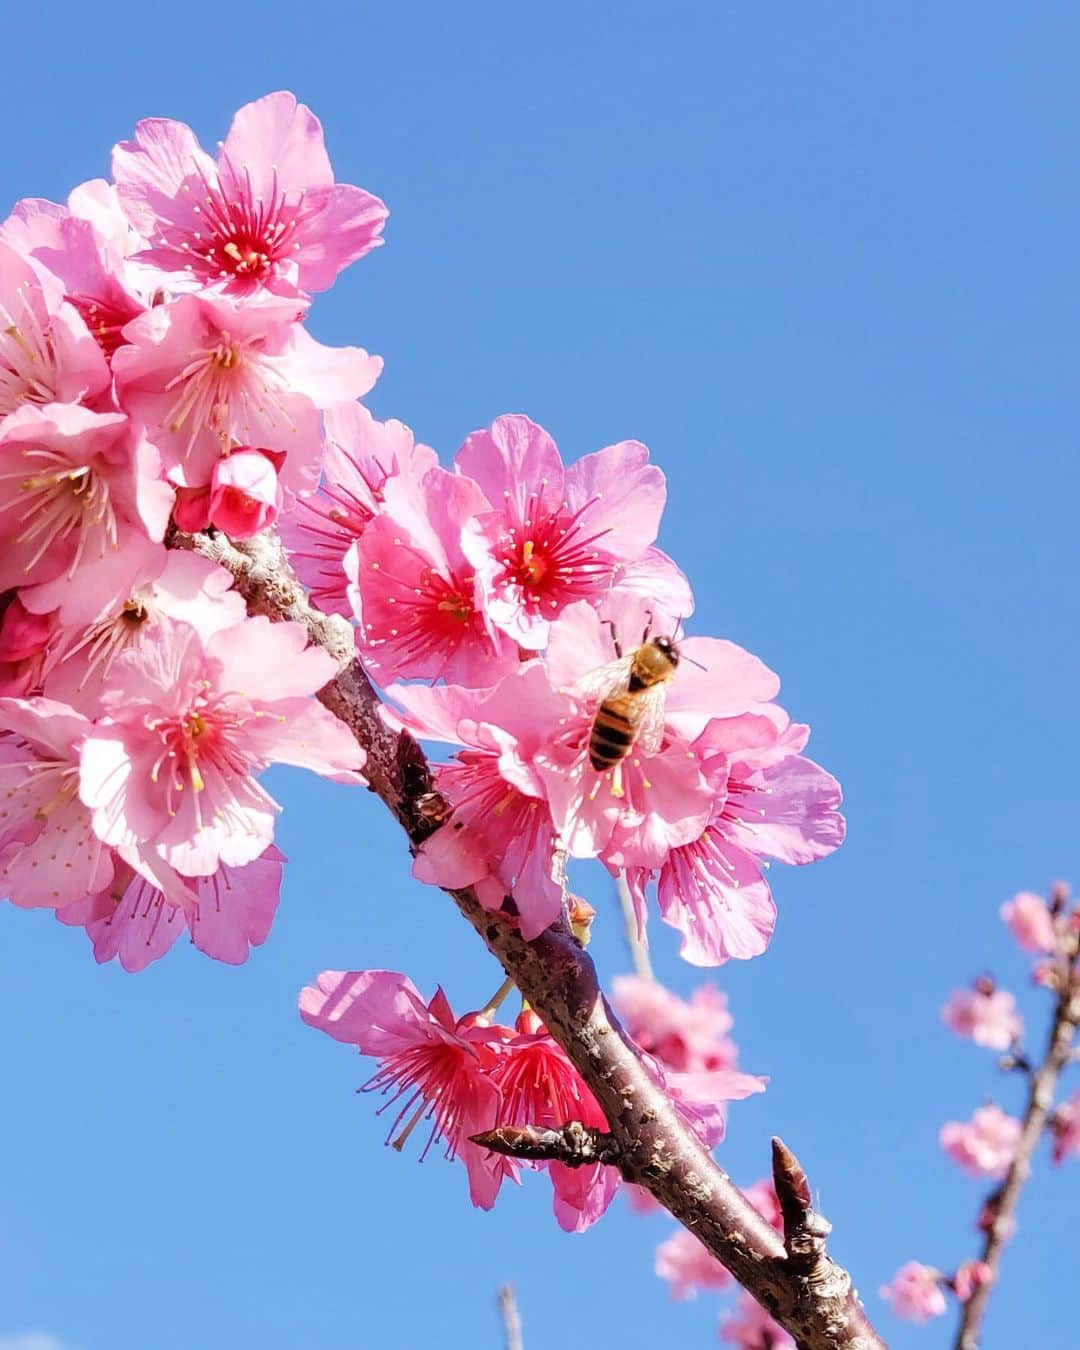 現地発信の旅行サイト「たびらい」のインスタグラム：「【沖縄】 今年も沖縄では桜が満開に！ 来年は、沖縄ファンの皆さんも現地で桜の花見を楽しめますように♡♡ : #たびらい #tabirai #ローカル旅行 #旅行好き #travelgram #旅行 #旅行好きな人と繋がりたい #travel #沖縄県 #たびらい沖縄 #沖縄 #カメラ女子 #女子旅 #okinawa #観光 #instatrip #桜 #🌸 #花 #flower #お花 #旅行好きと繋がりたい #trip」